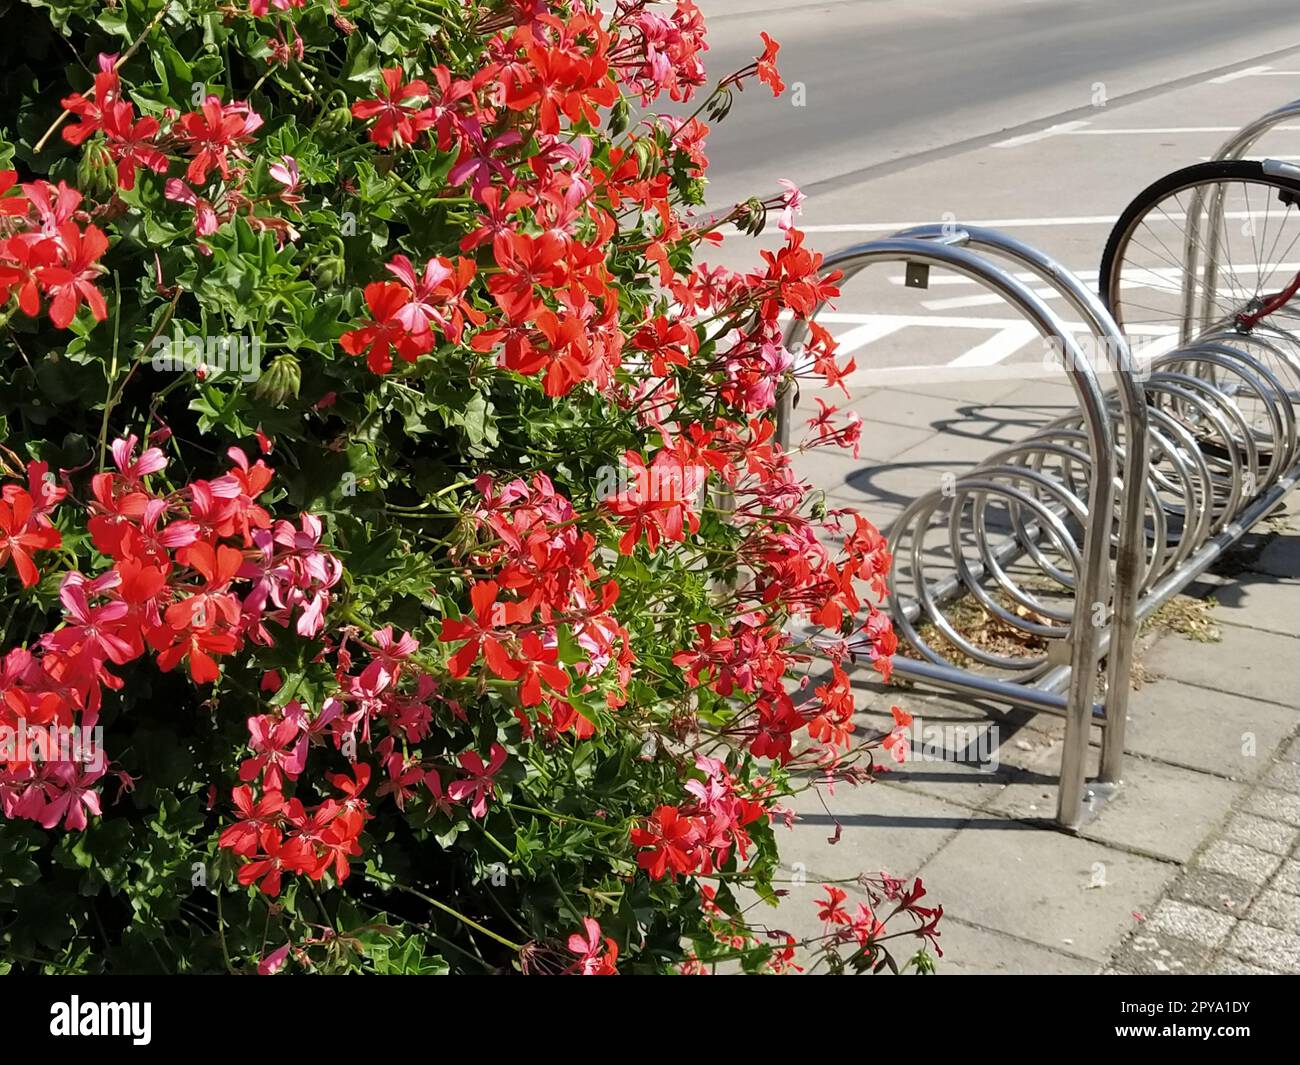 Pelargonium peltatum. Géraniums de lierre en fleurs rouge, rose et magenta dans un parc de la ville. Aménagement paysager vertical d'un jardin, d'une cour ou d'une rue de la ville. Support d'arrimage de vélo en arrière-plan Banque D'Images